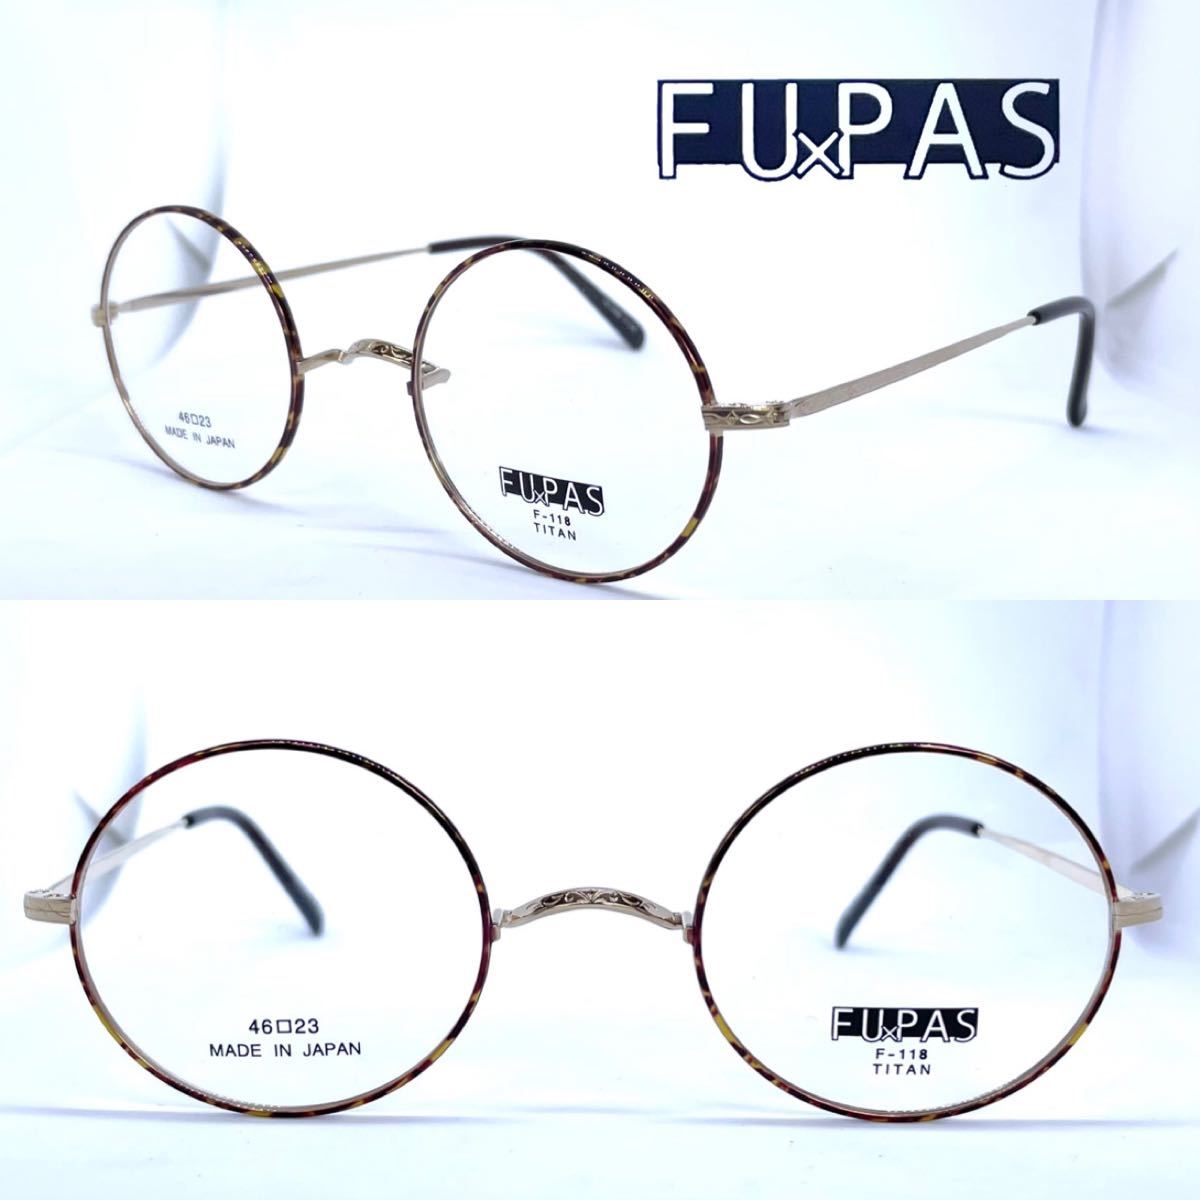 新品 送料無料 日本製 丸メガネ クラシック ラウンド型 FU×PAS FUPAS フーパス メガネフレーム F-118 ゴールド/デミMADE IN JAPAN 眼鏡